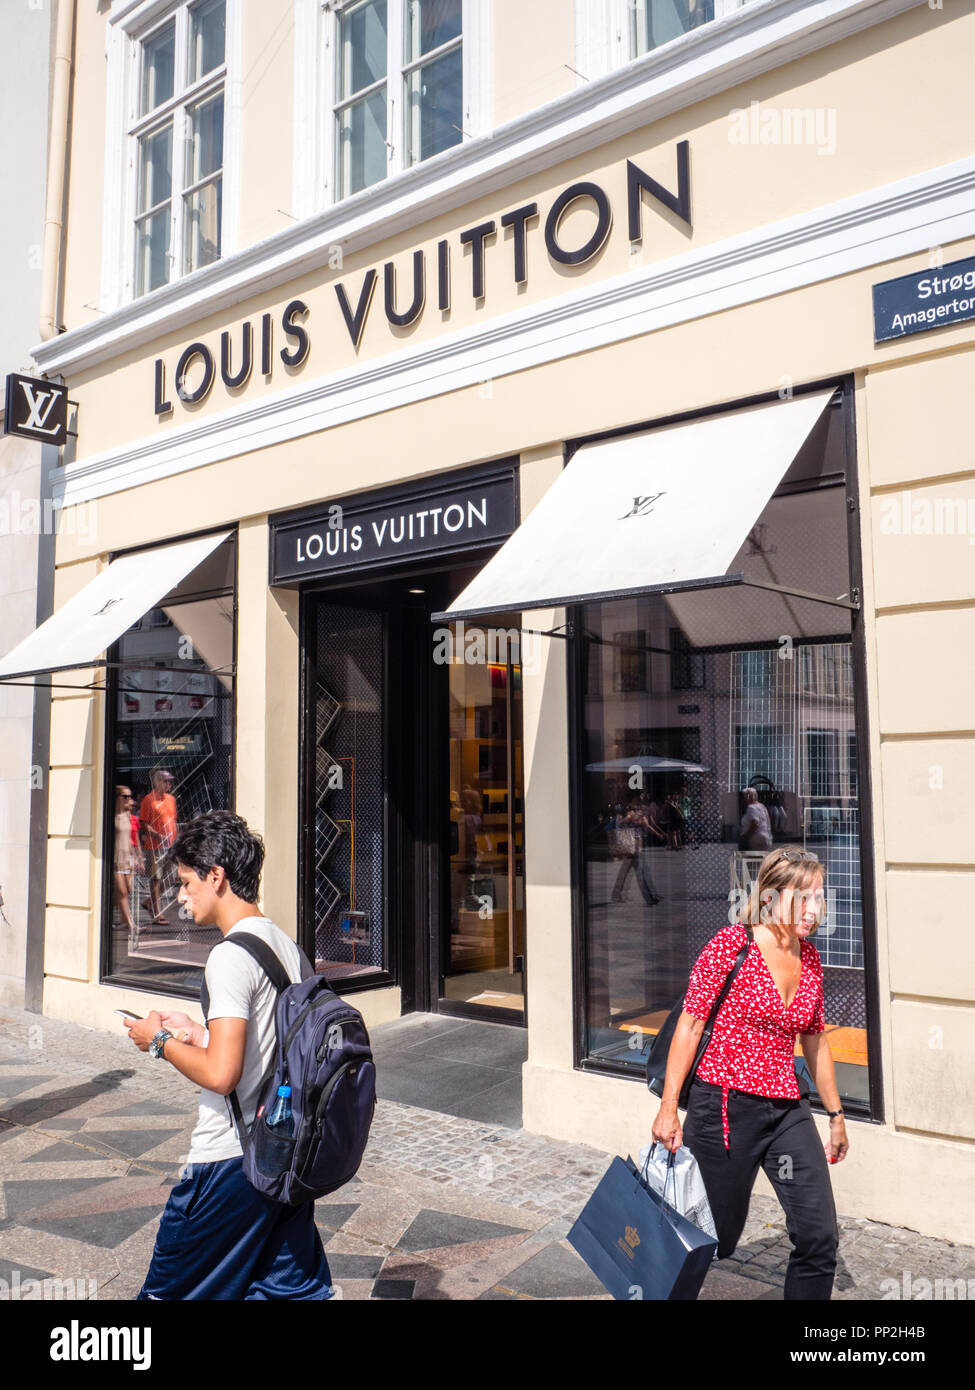 Louis Vuitton, Retail Store, Europe Stock Photo - Alamy